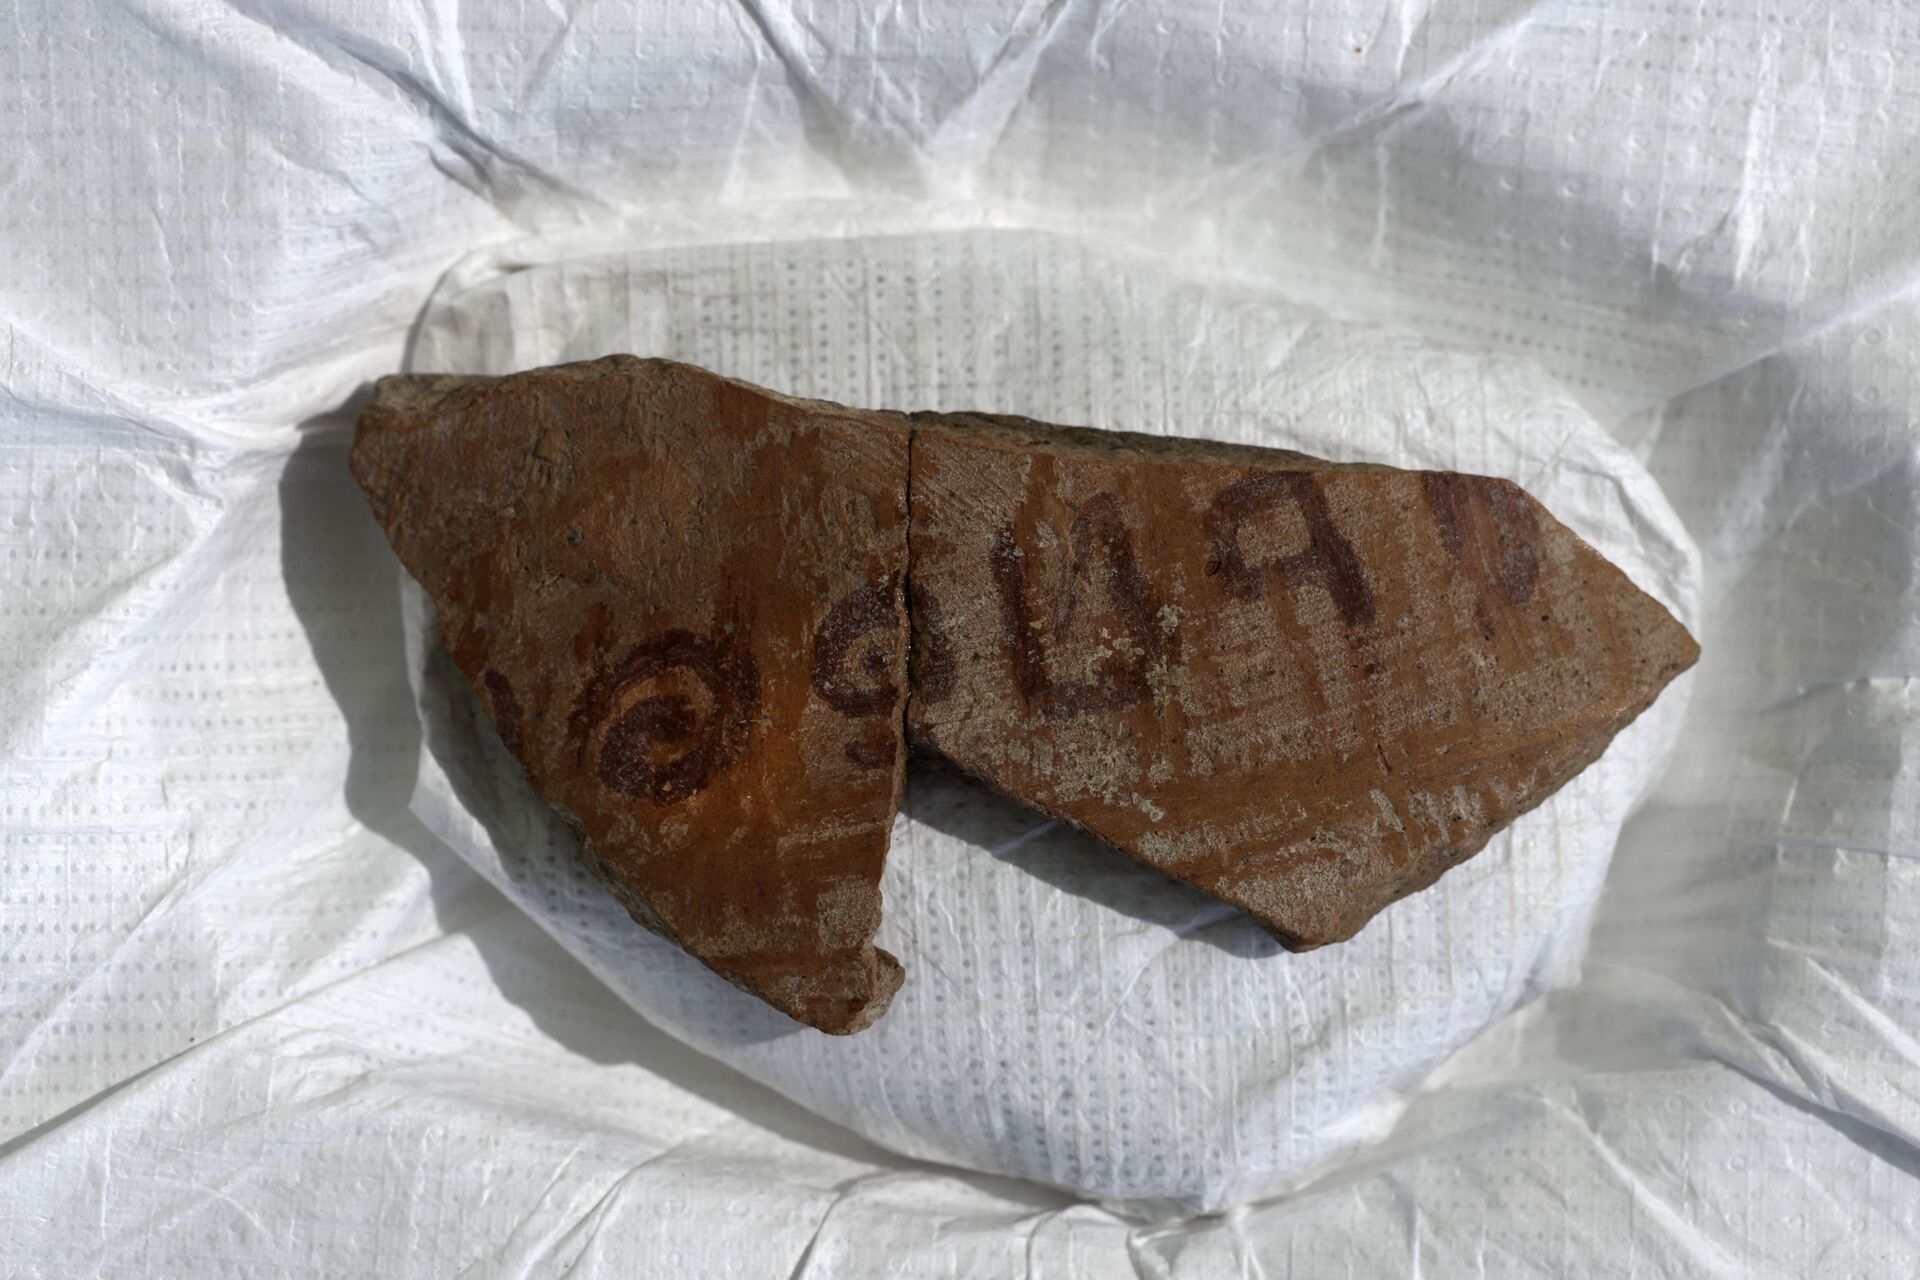 Descobrem em Israel raríssima inscrição de 3.000 anos com nome de juiz bíblico (FOTOS) - Sputnik Brasil, 1920, 13.07.2021